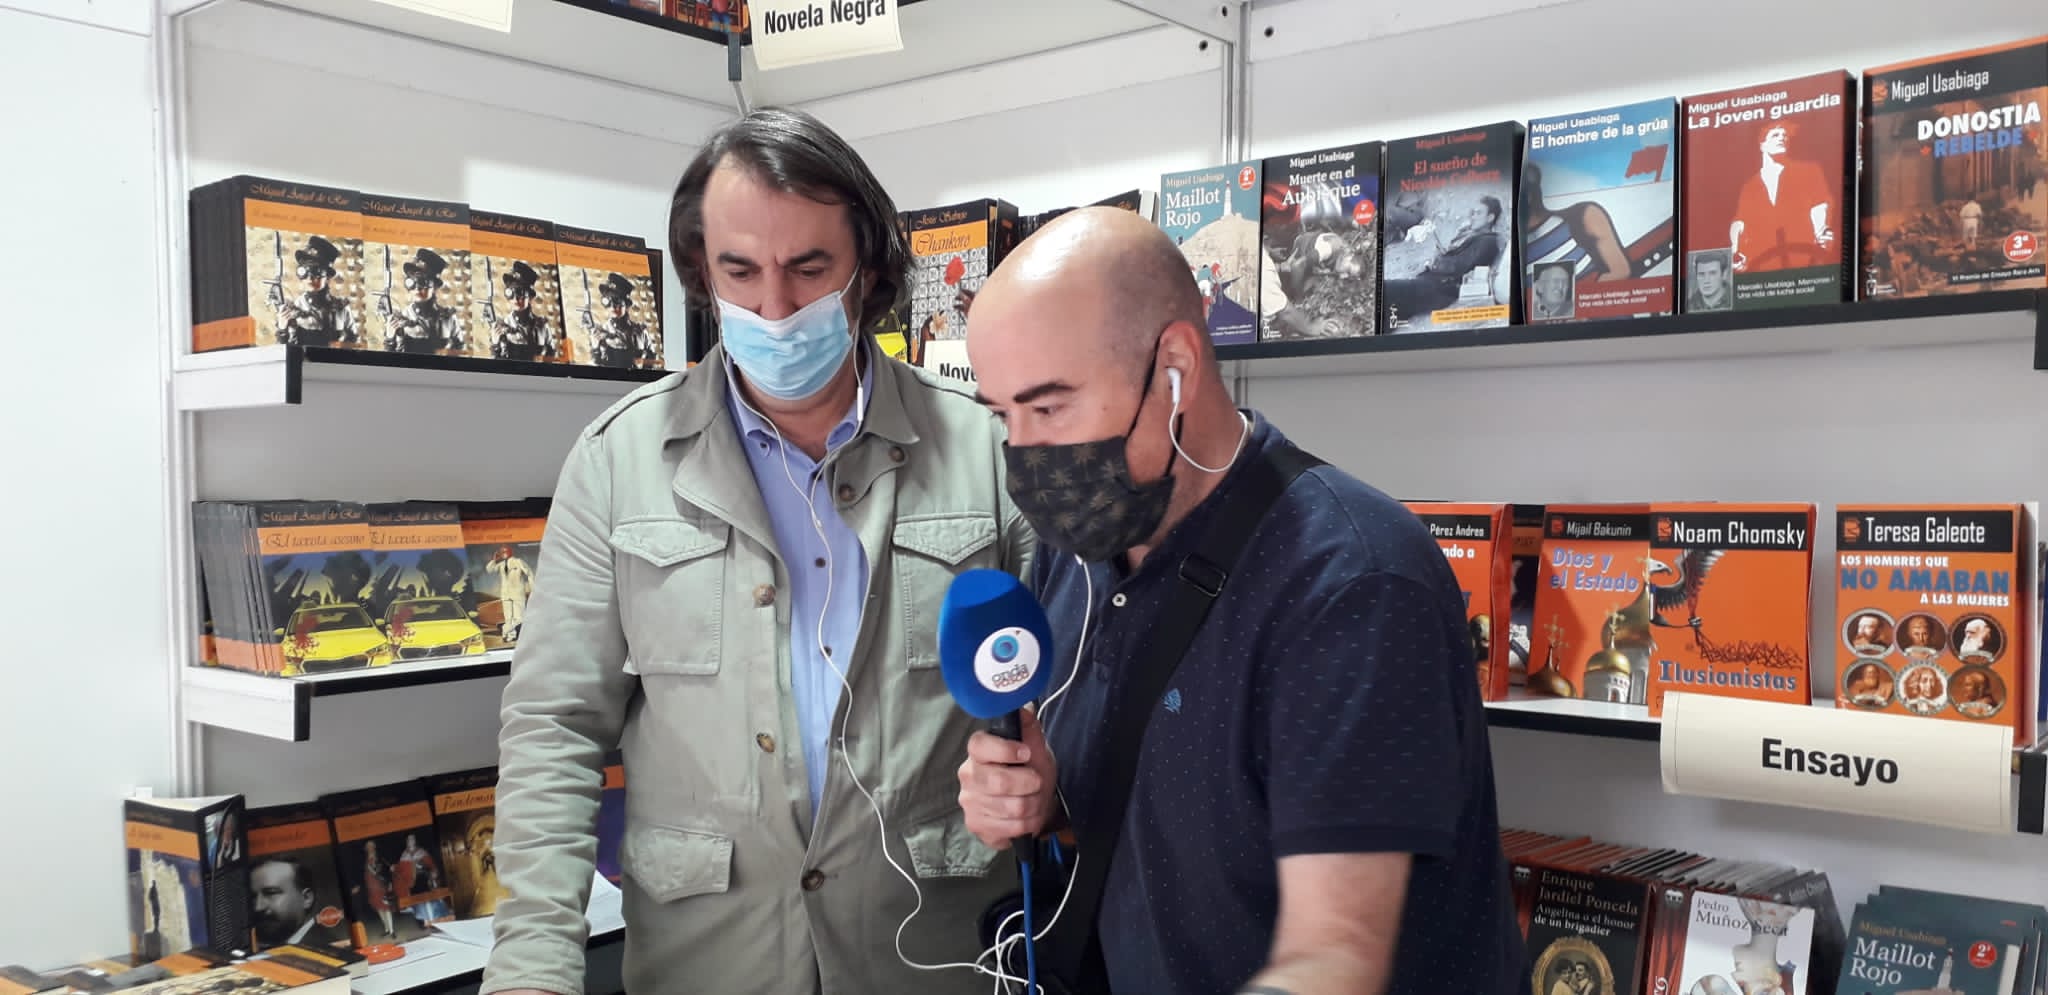 Miguel Ángel de Rus entrevistado en Onda vasca durante la Feria del Libro de San Sebastián